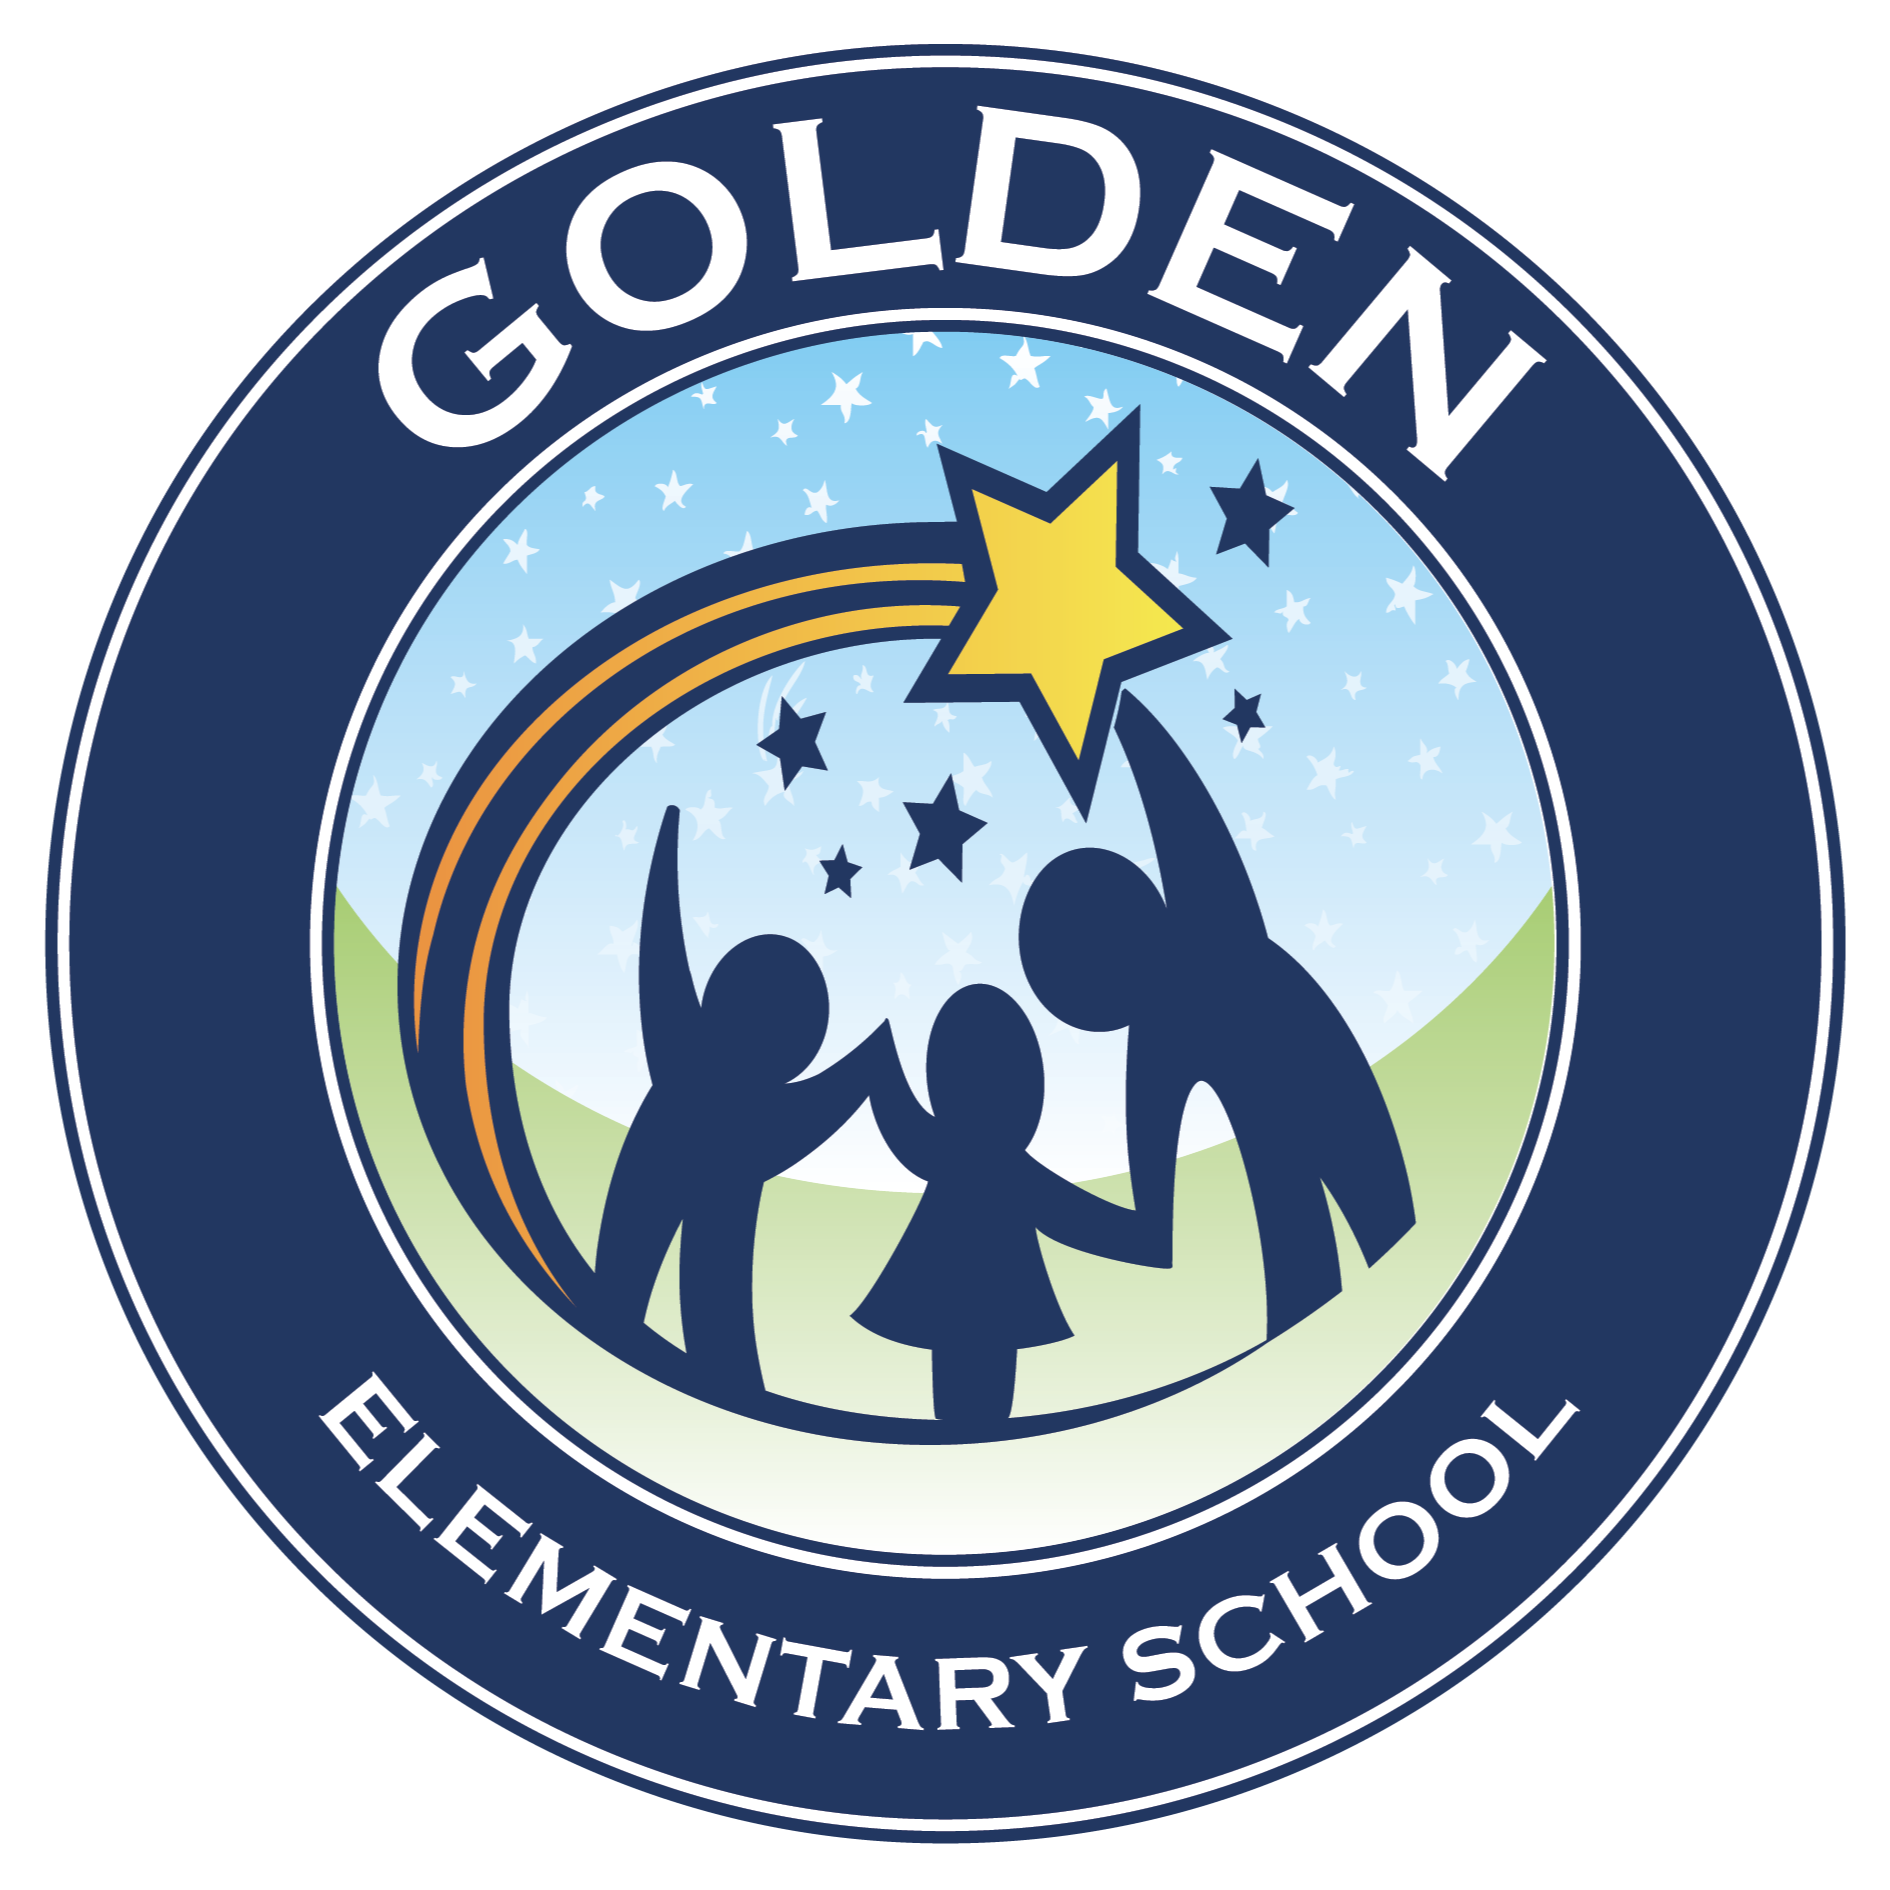 John L. Golden logo